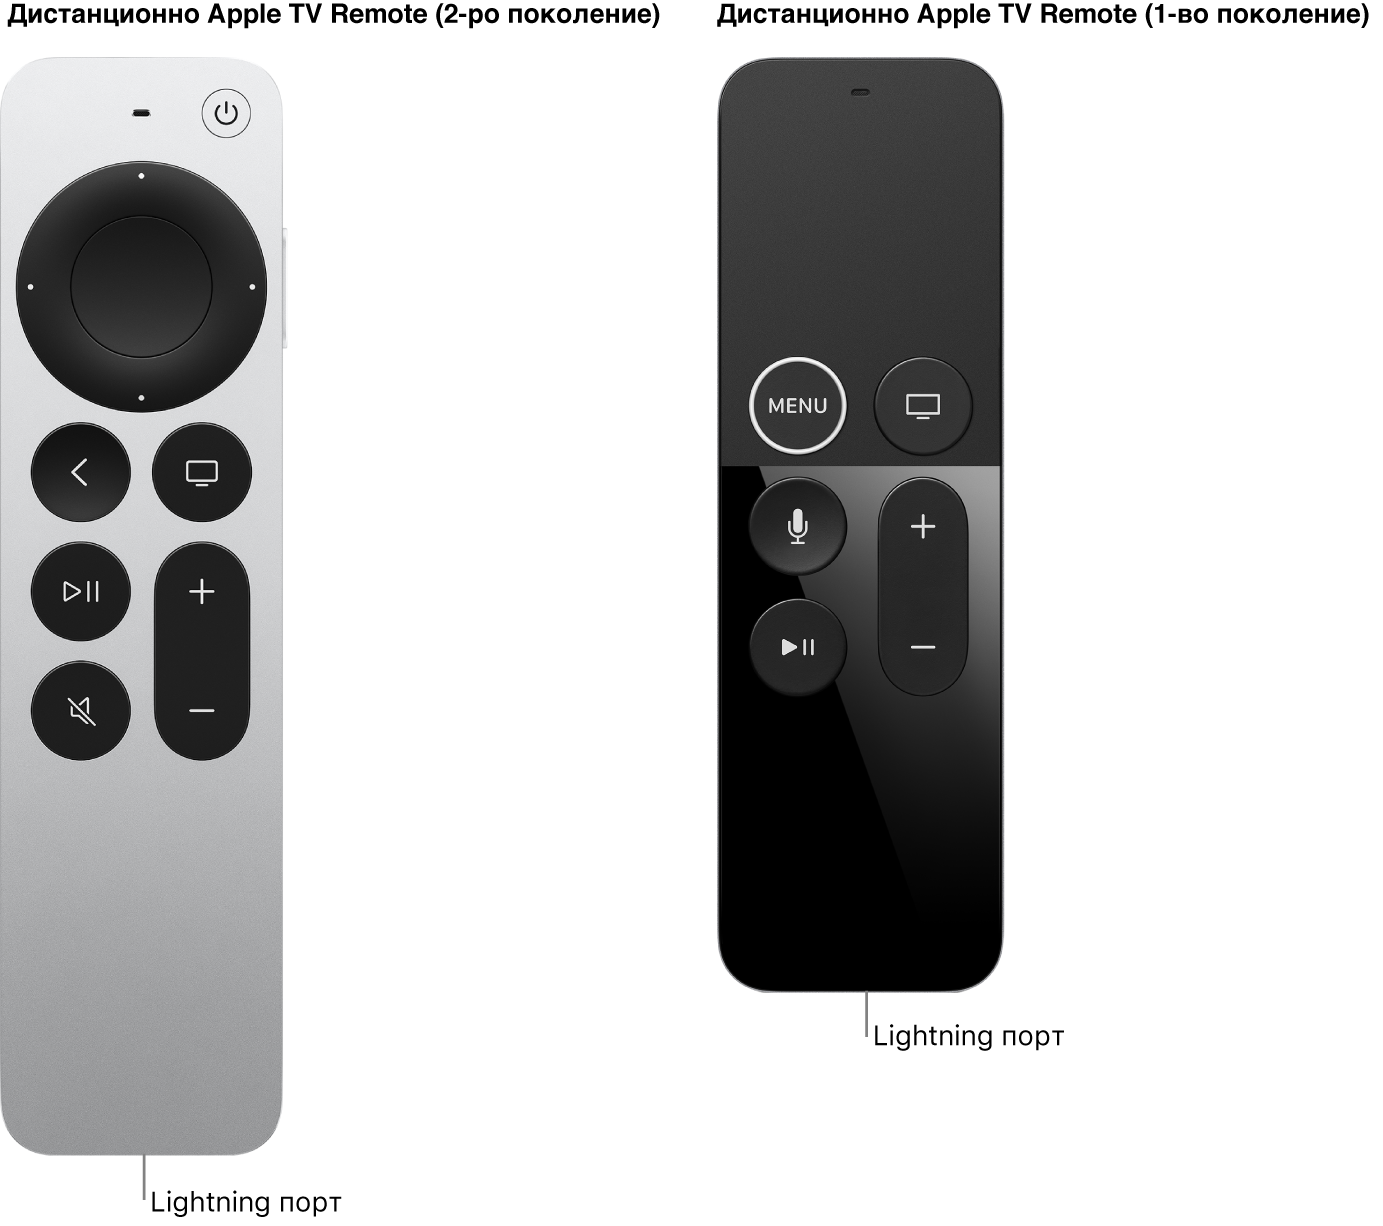 Изображение на дистанционно Apple TV Remote (2-ро поколение) и дистанционно Apple TV Remote (1-во поколение) с порта Lightning.